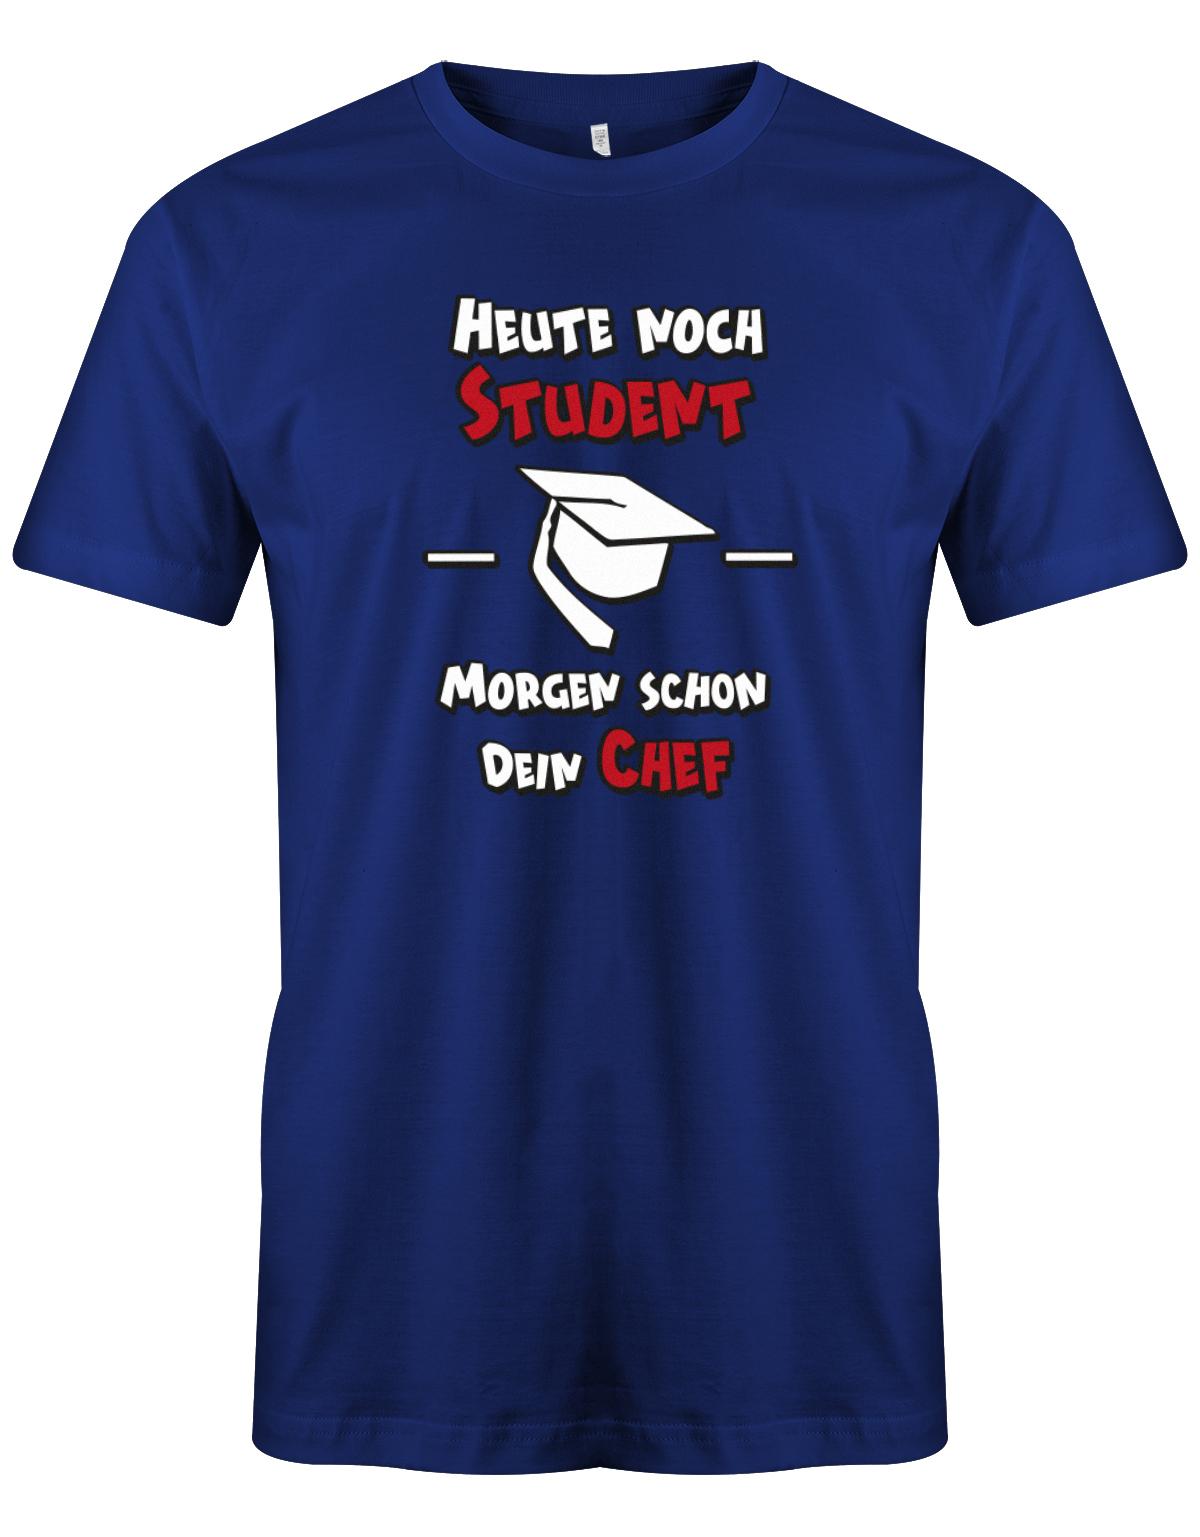 Heute-noch-Student-morgen-schon-dein-Chef-Herren-Studium-Shirt-oyalblau